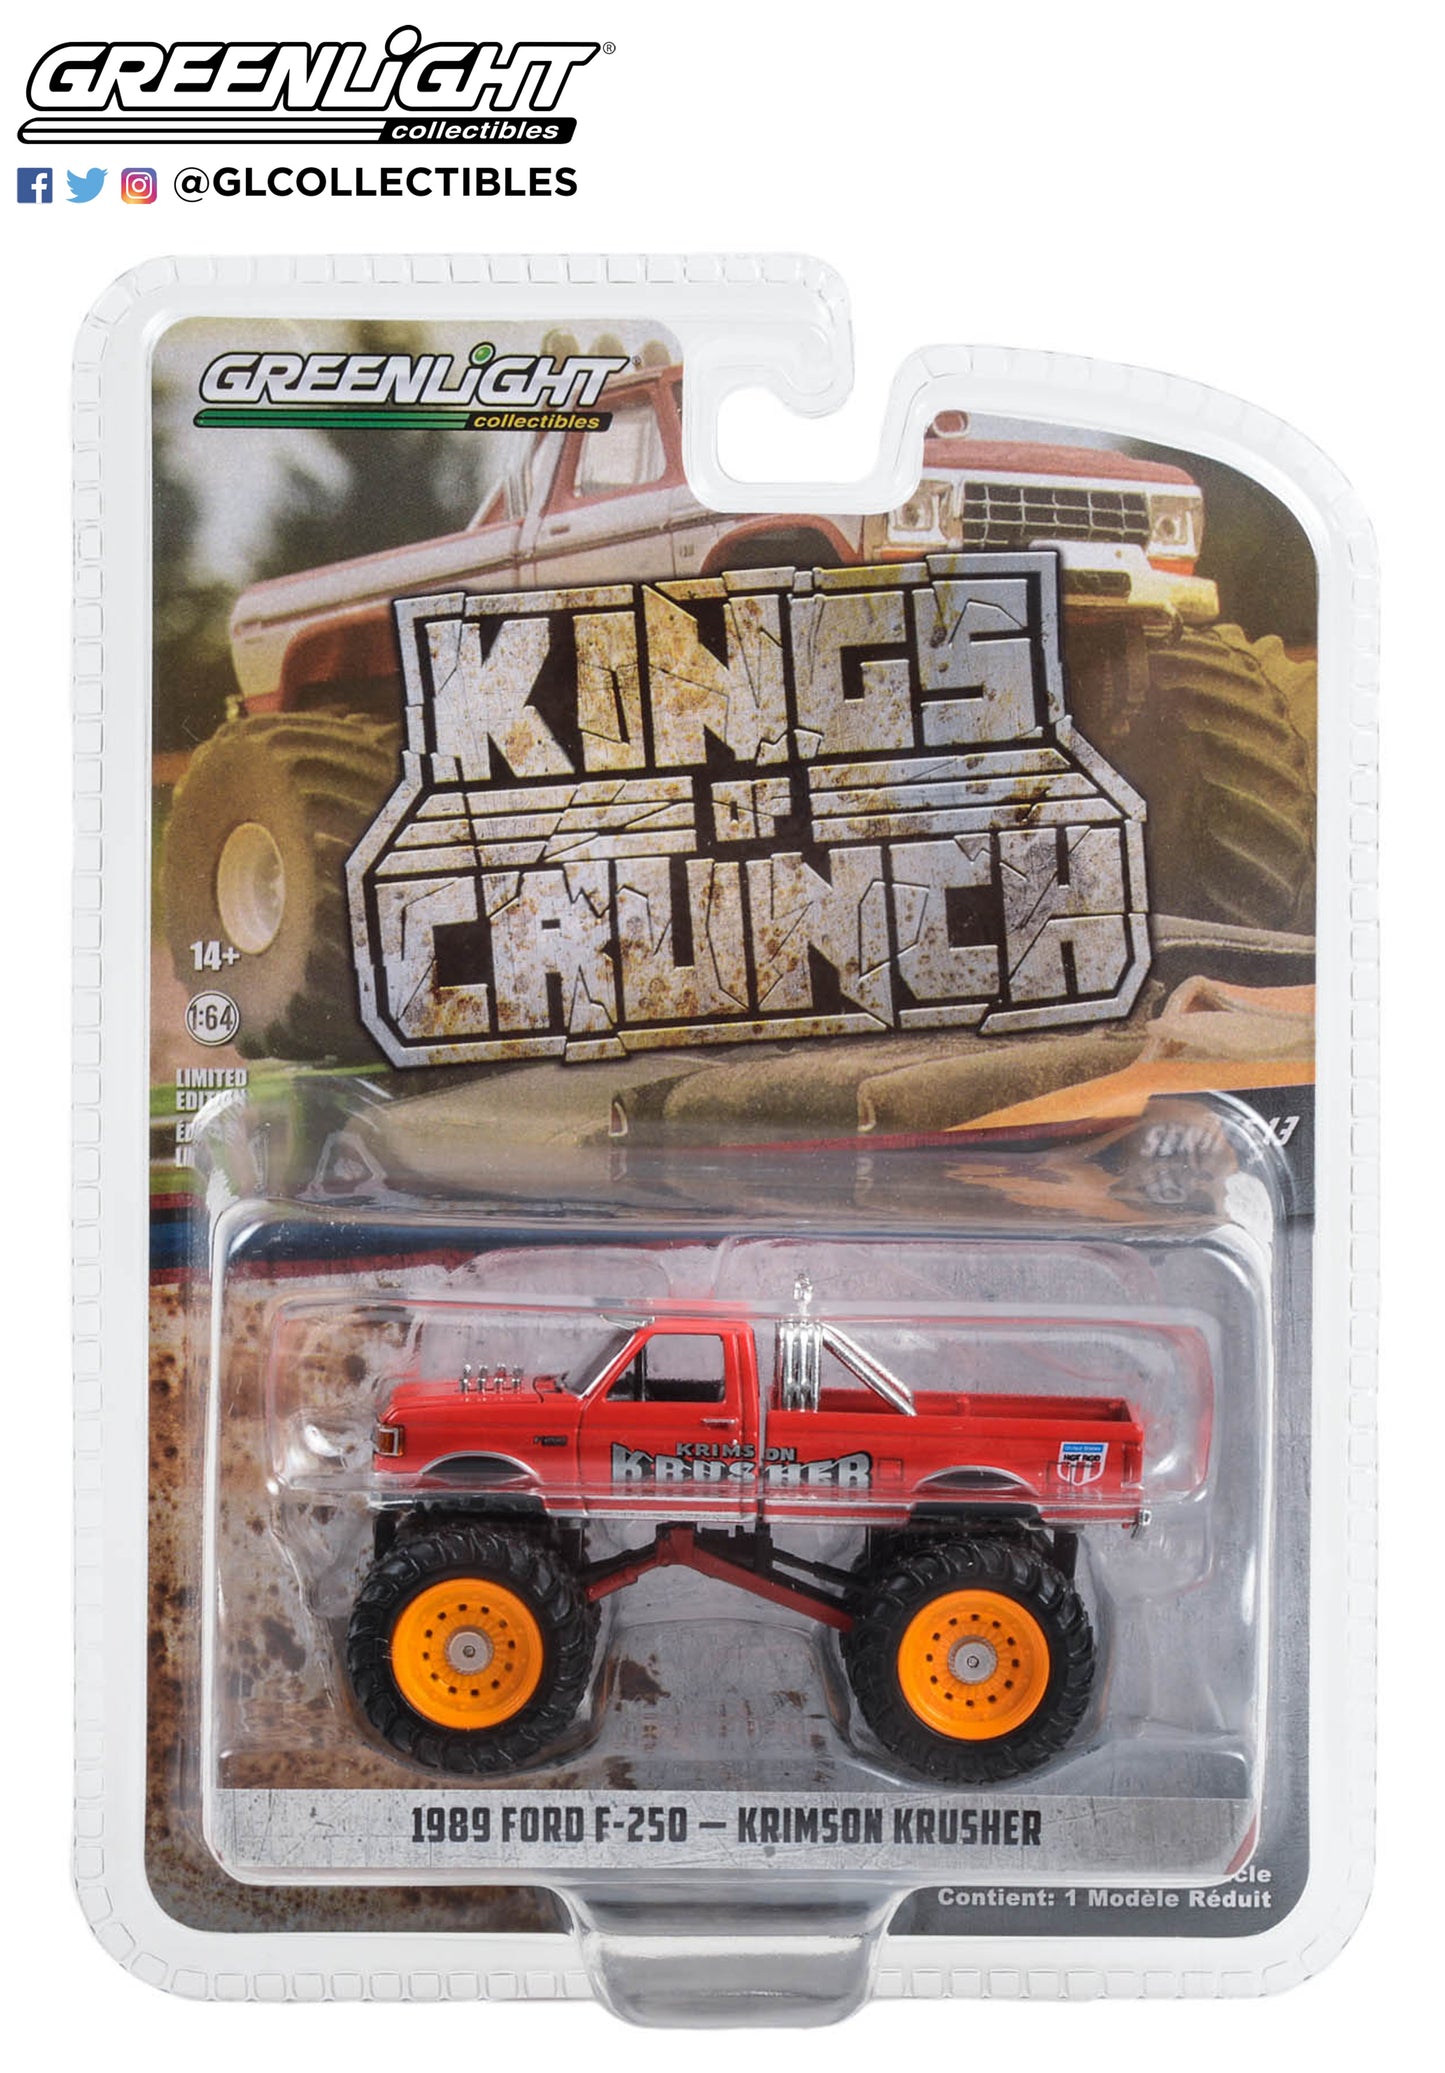 GreenLight 1:64 Kings of Crunch Series 13 - Krimson Krusher - 1989 Ford F-250 Monster Truck 49130-F